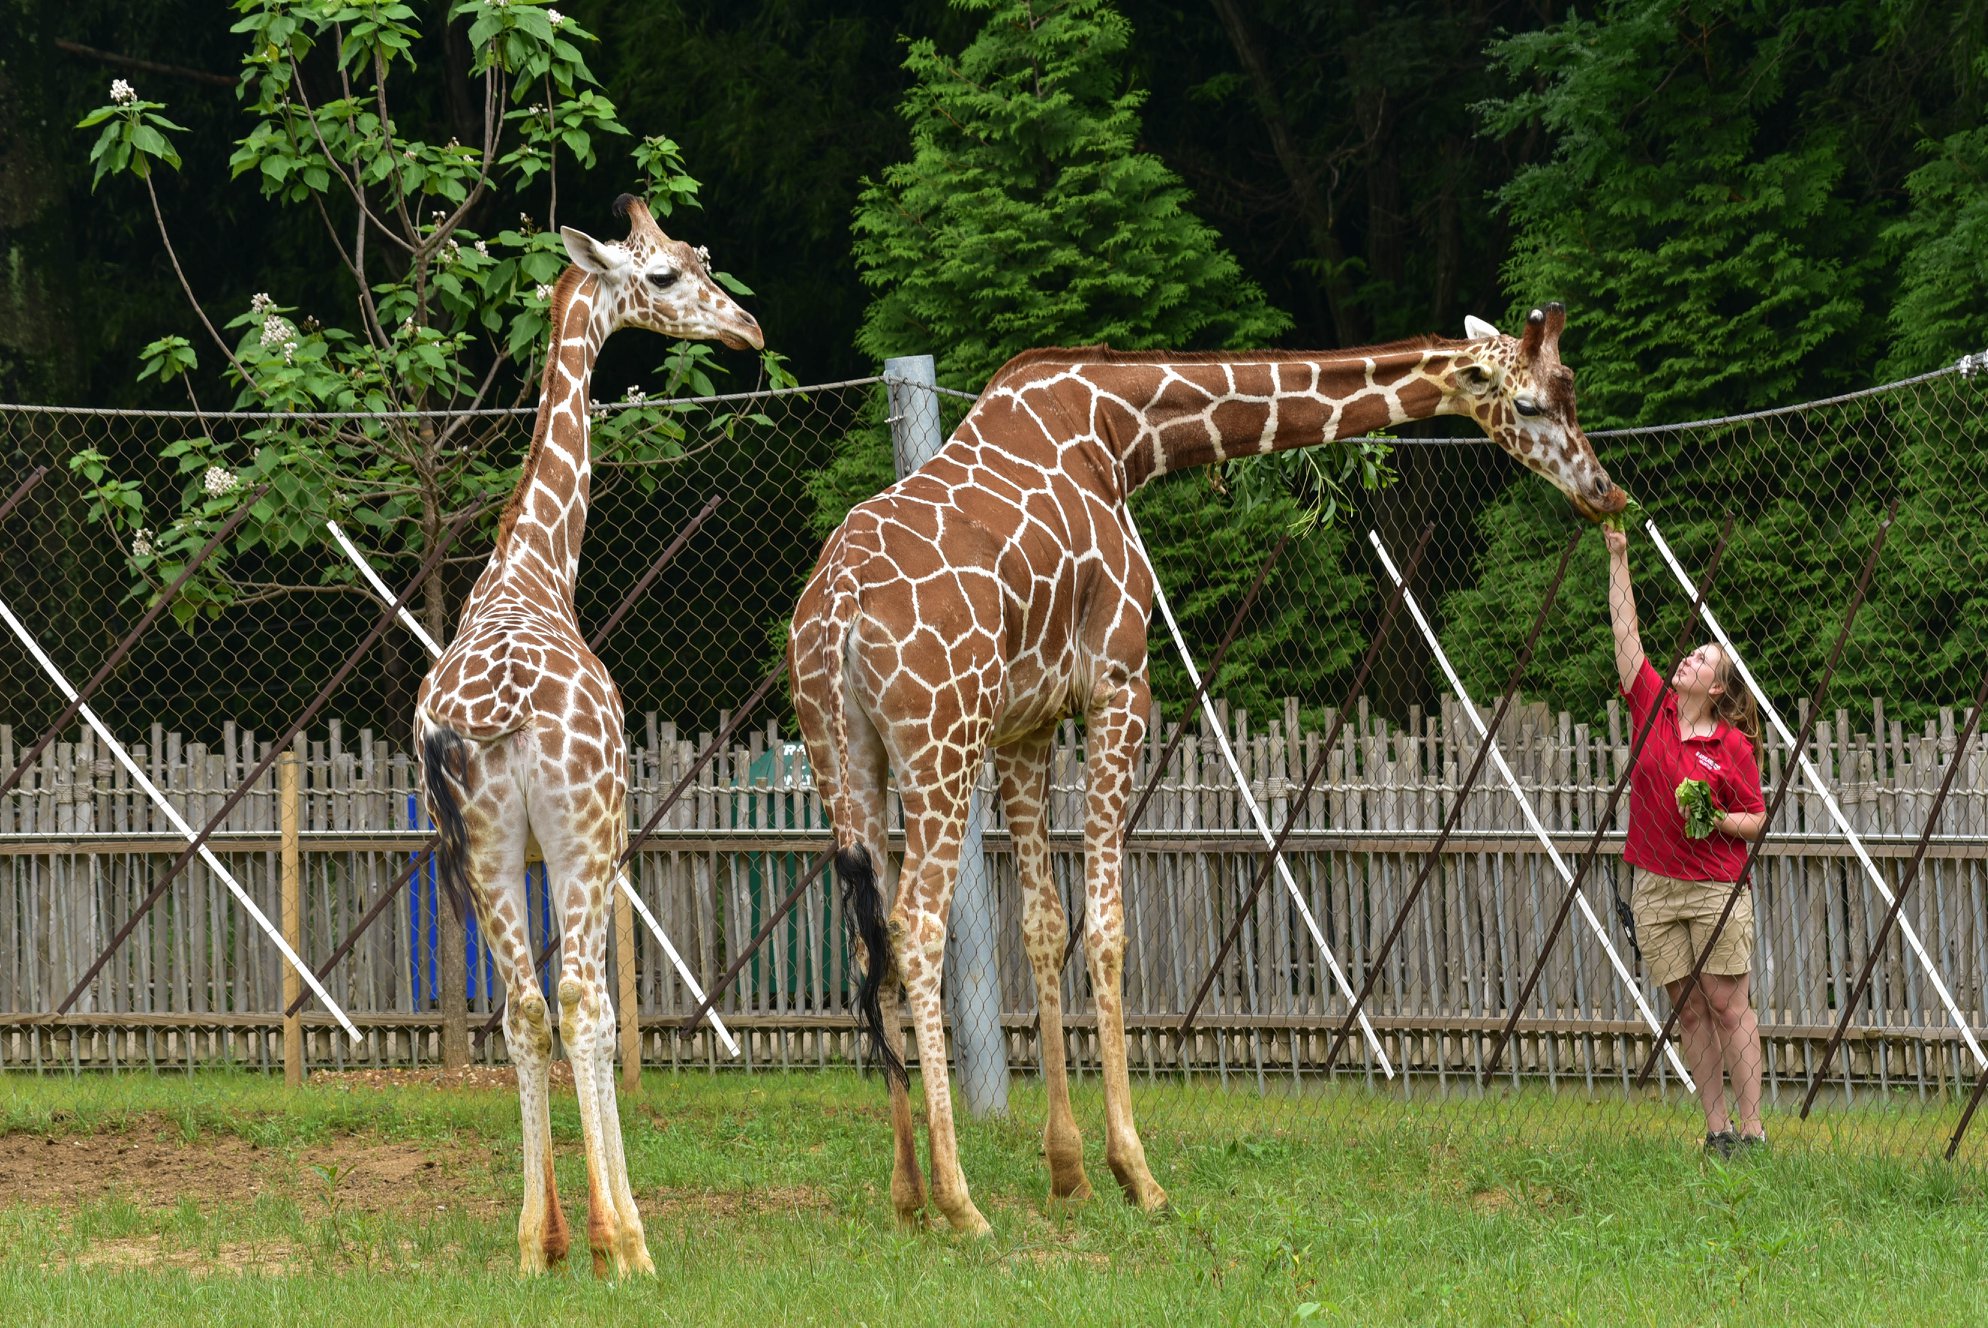 Powell feeding giraffes